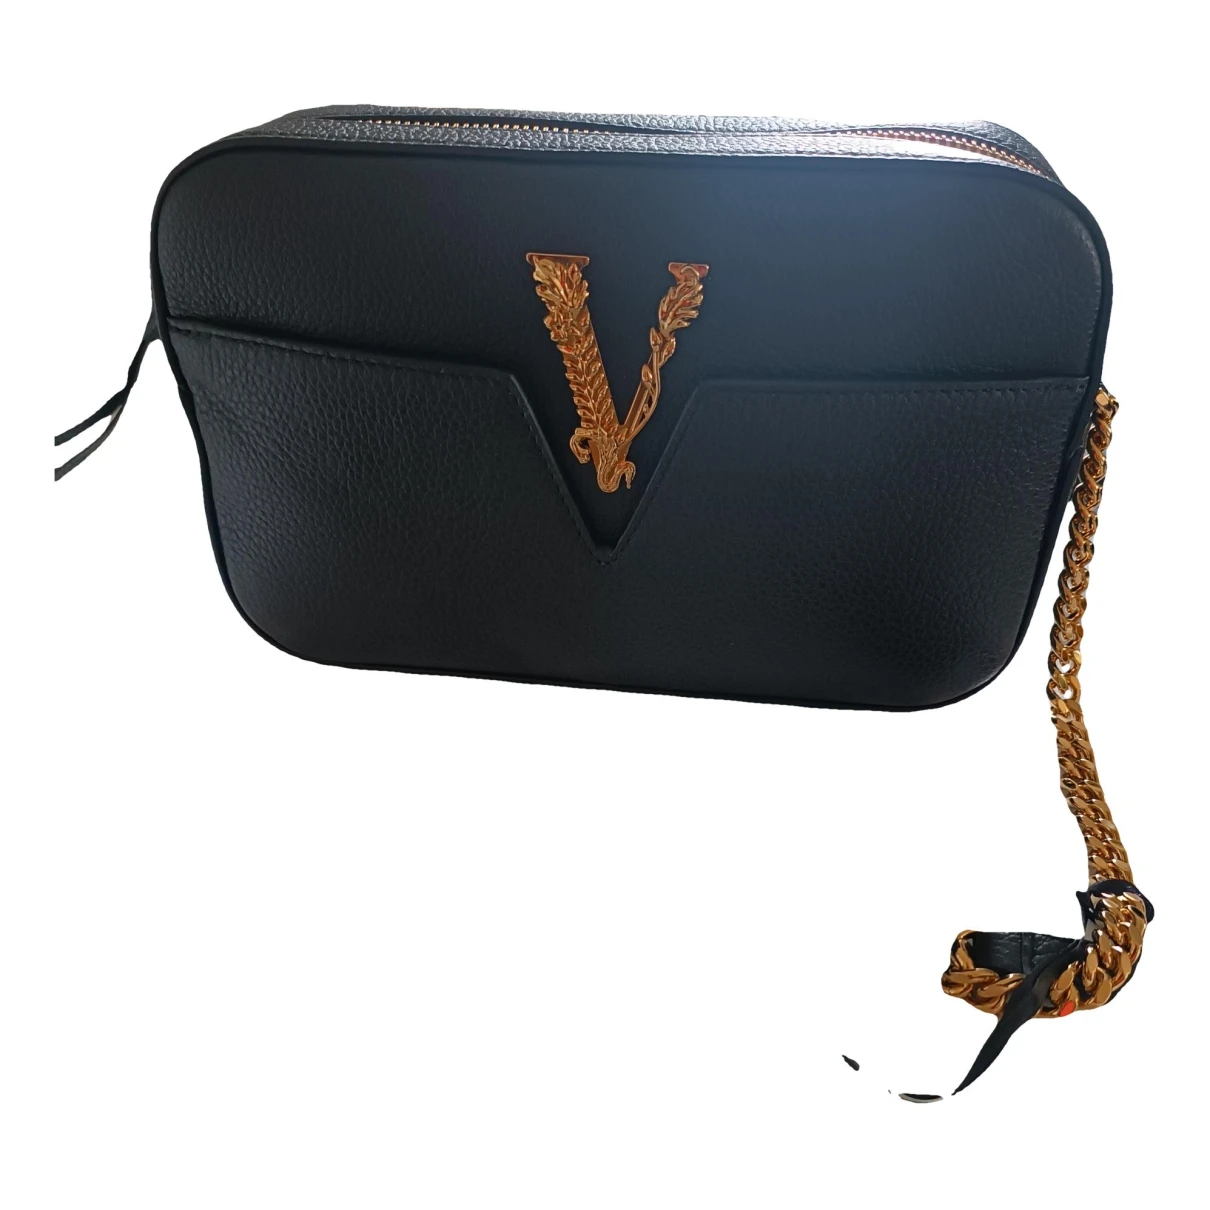 Pre-owned Versace Virtus Leather Handbag In Black